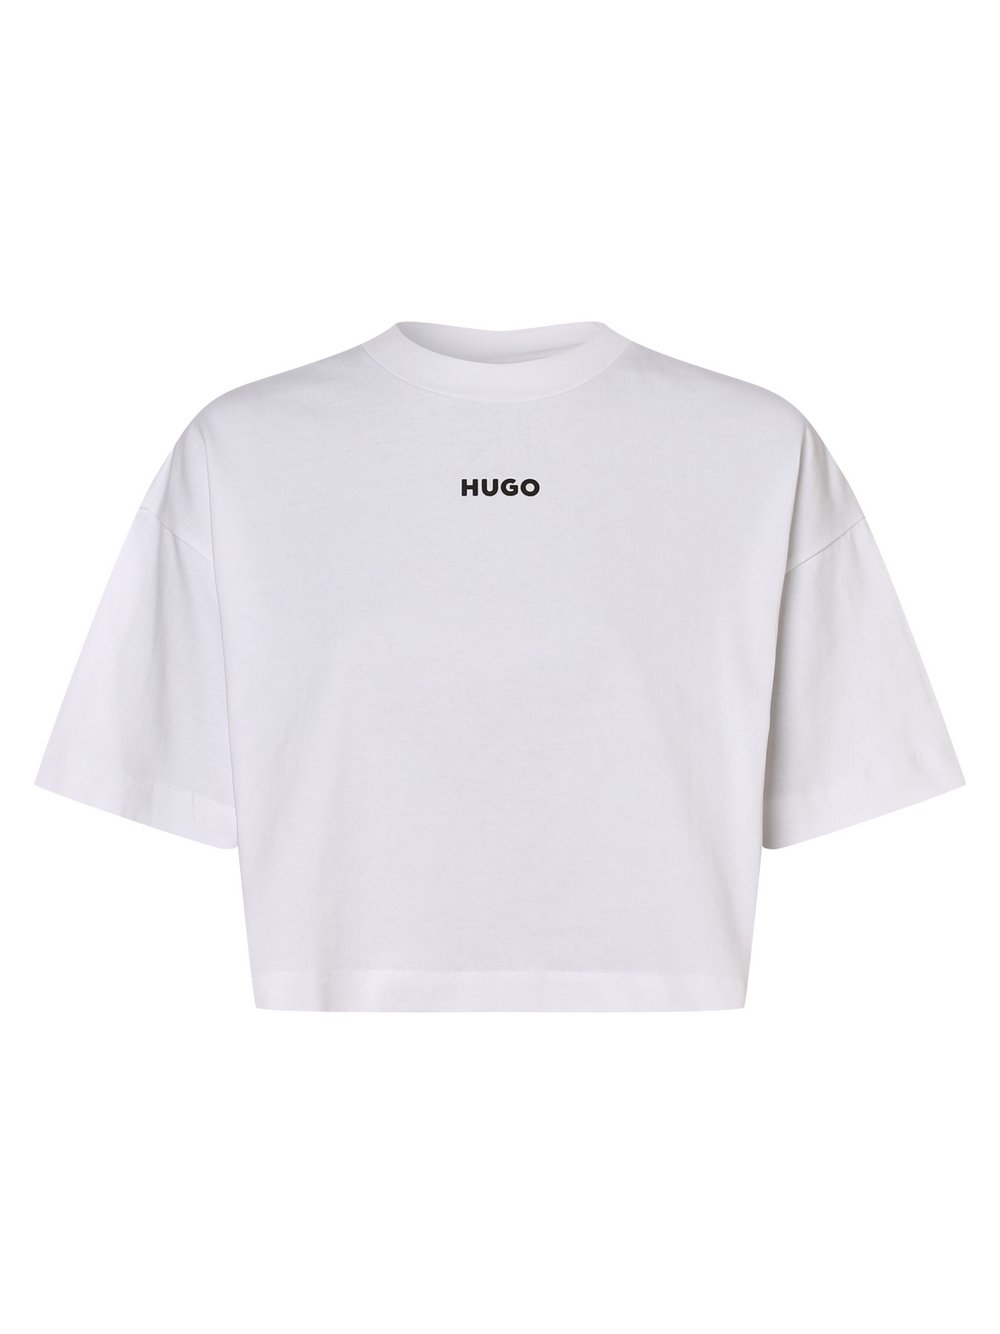 HUGO - T-shirt damski – Daylora, biały